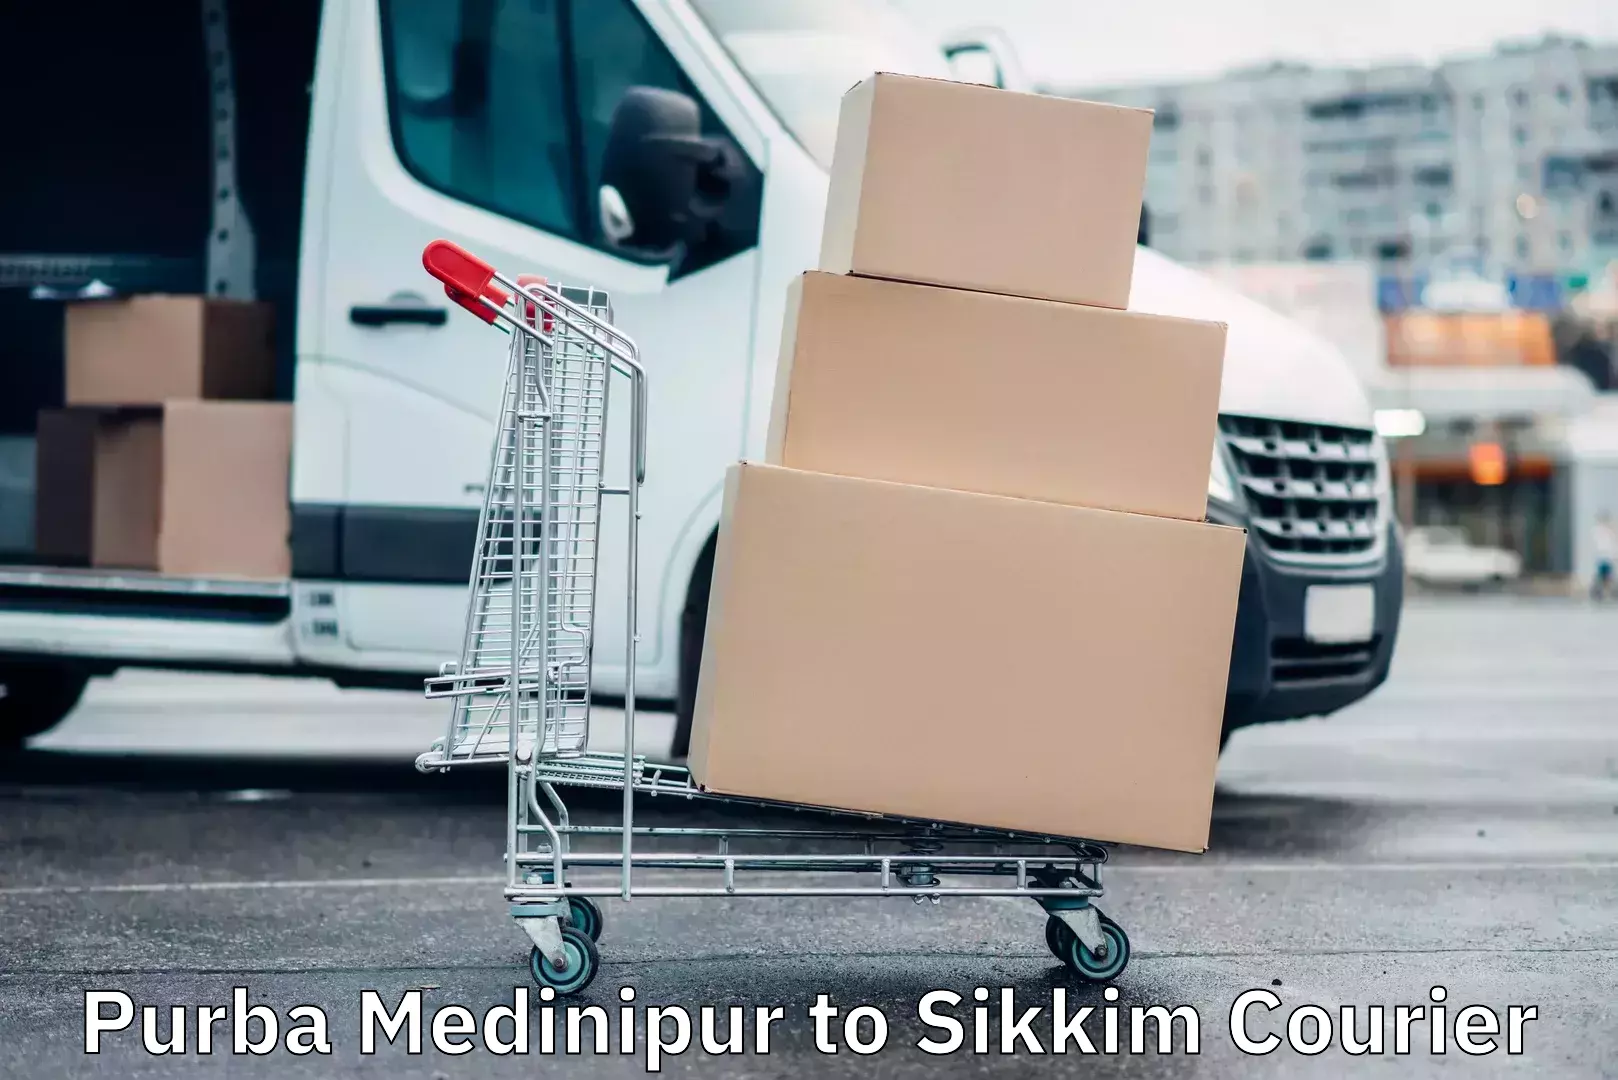 Efficient cargo services Purba Medinipur to Sikkim